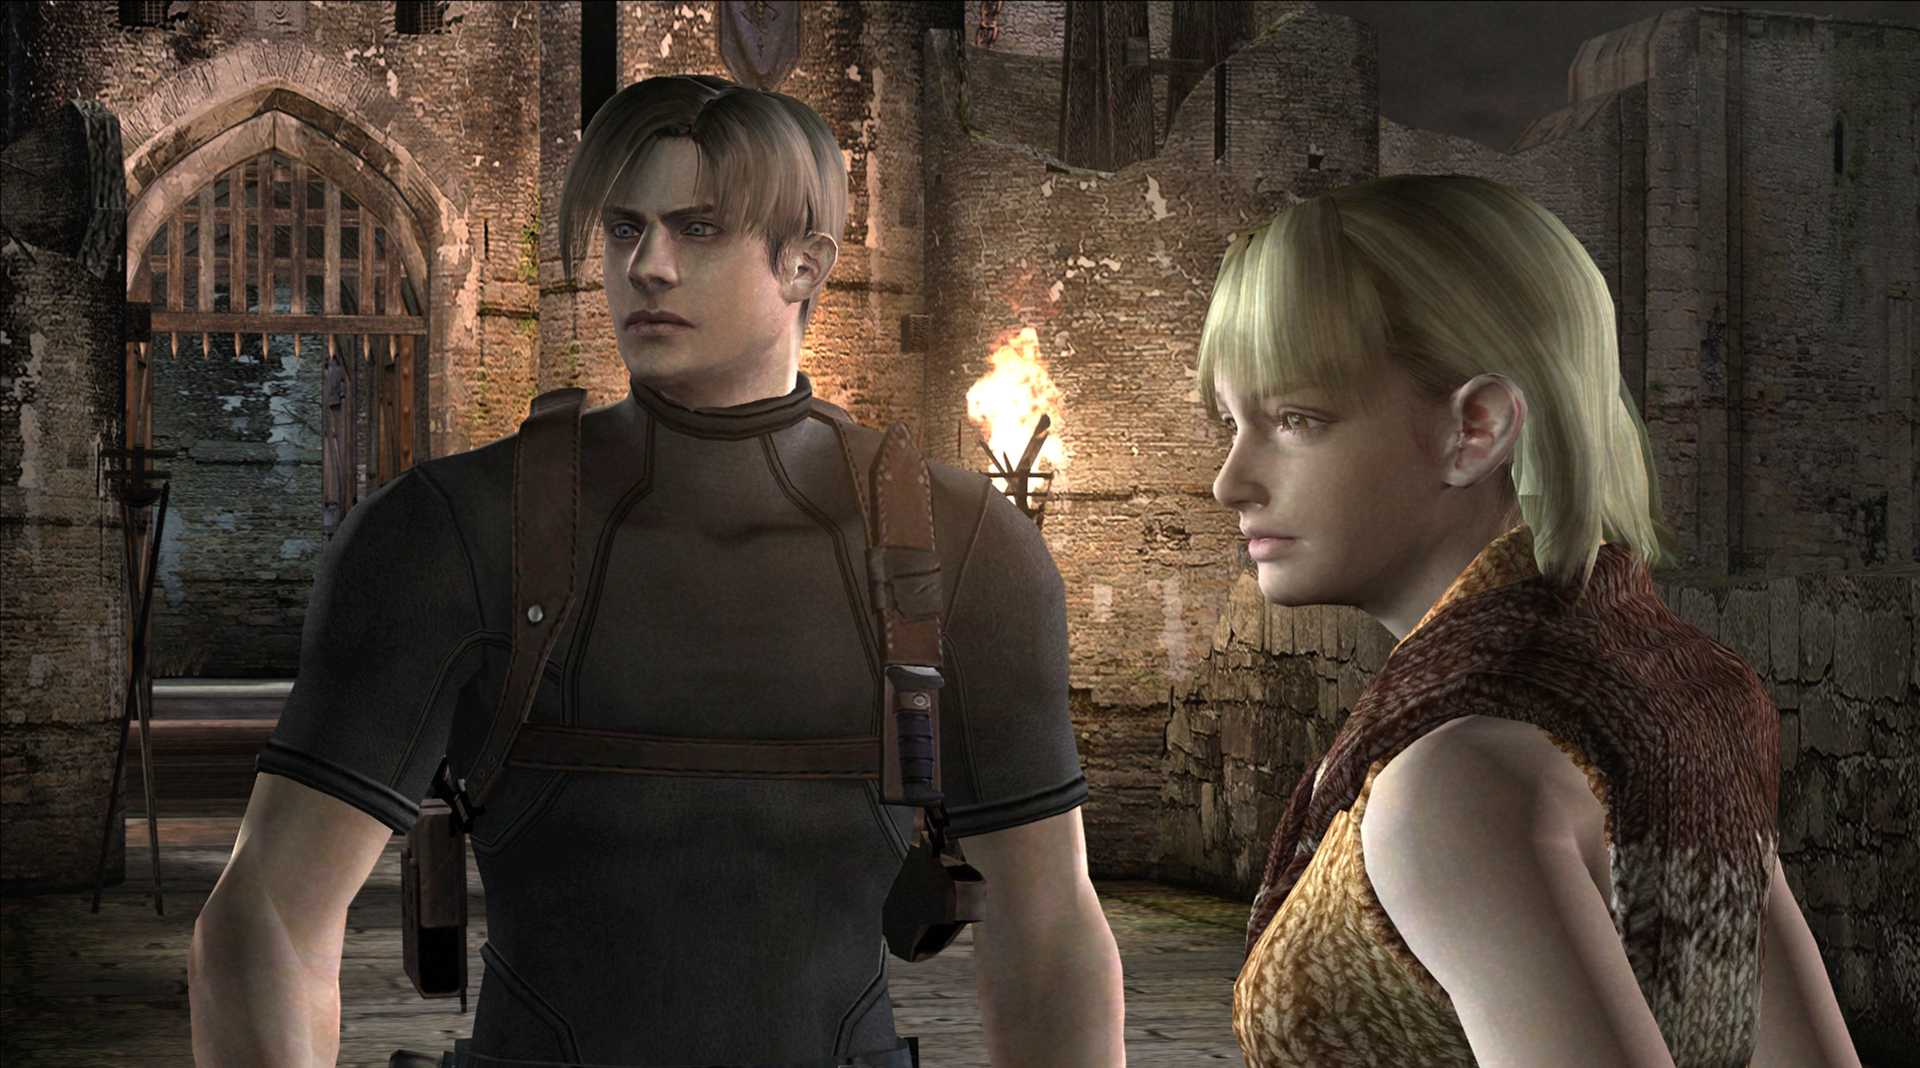 Resident Evil 4 on Steam